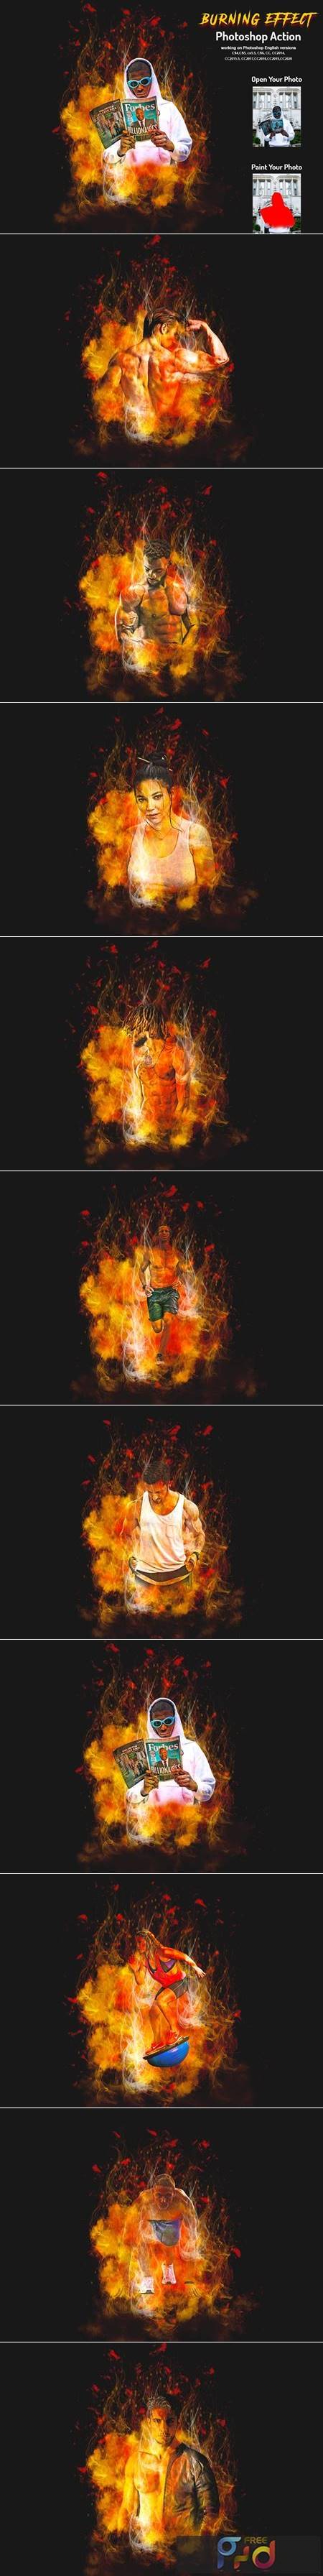 Burning Effect Photoshop Action 5999913 1